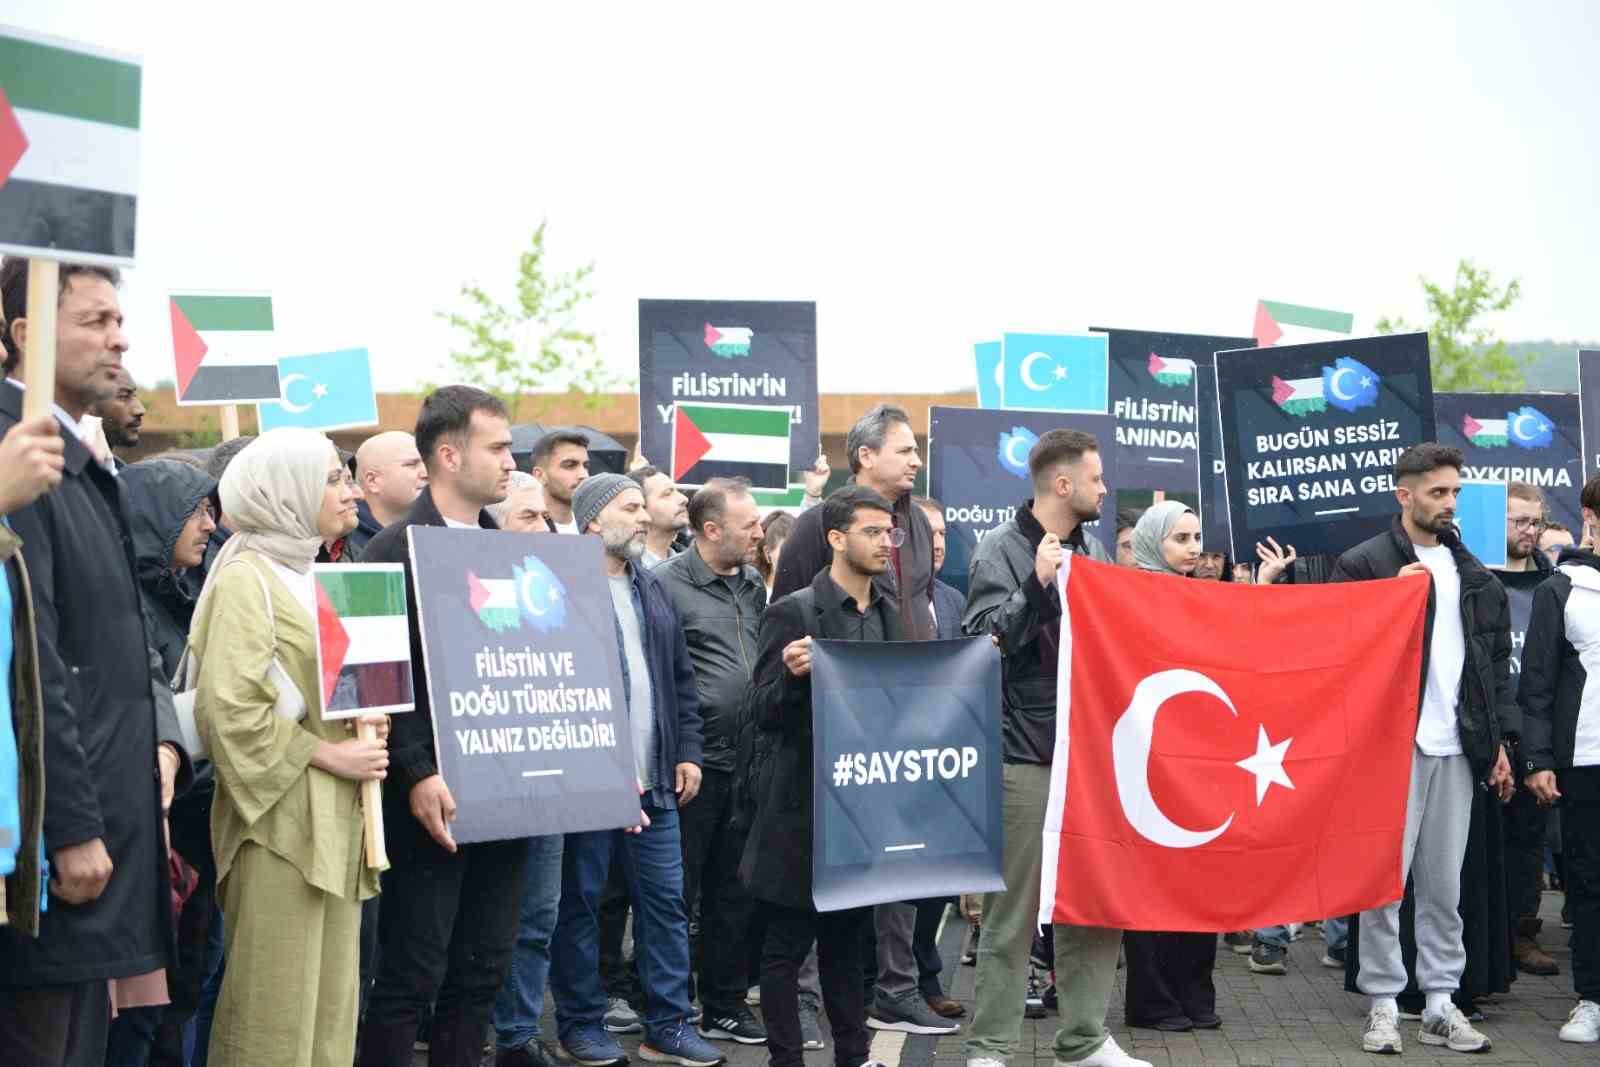 Üniversite öğrencilerinden Filistin ve Doğu Türkistan’a sessiz destek
